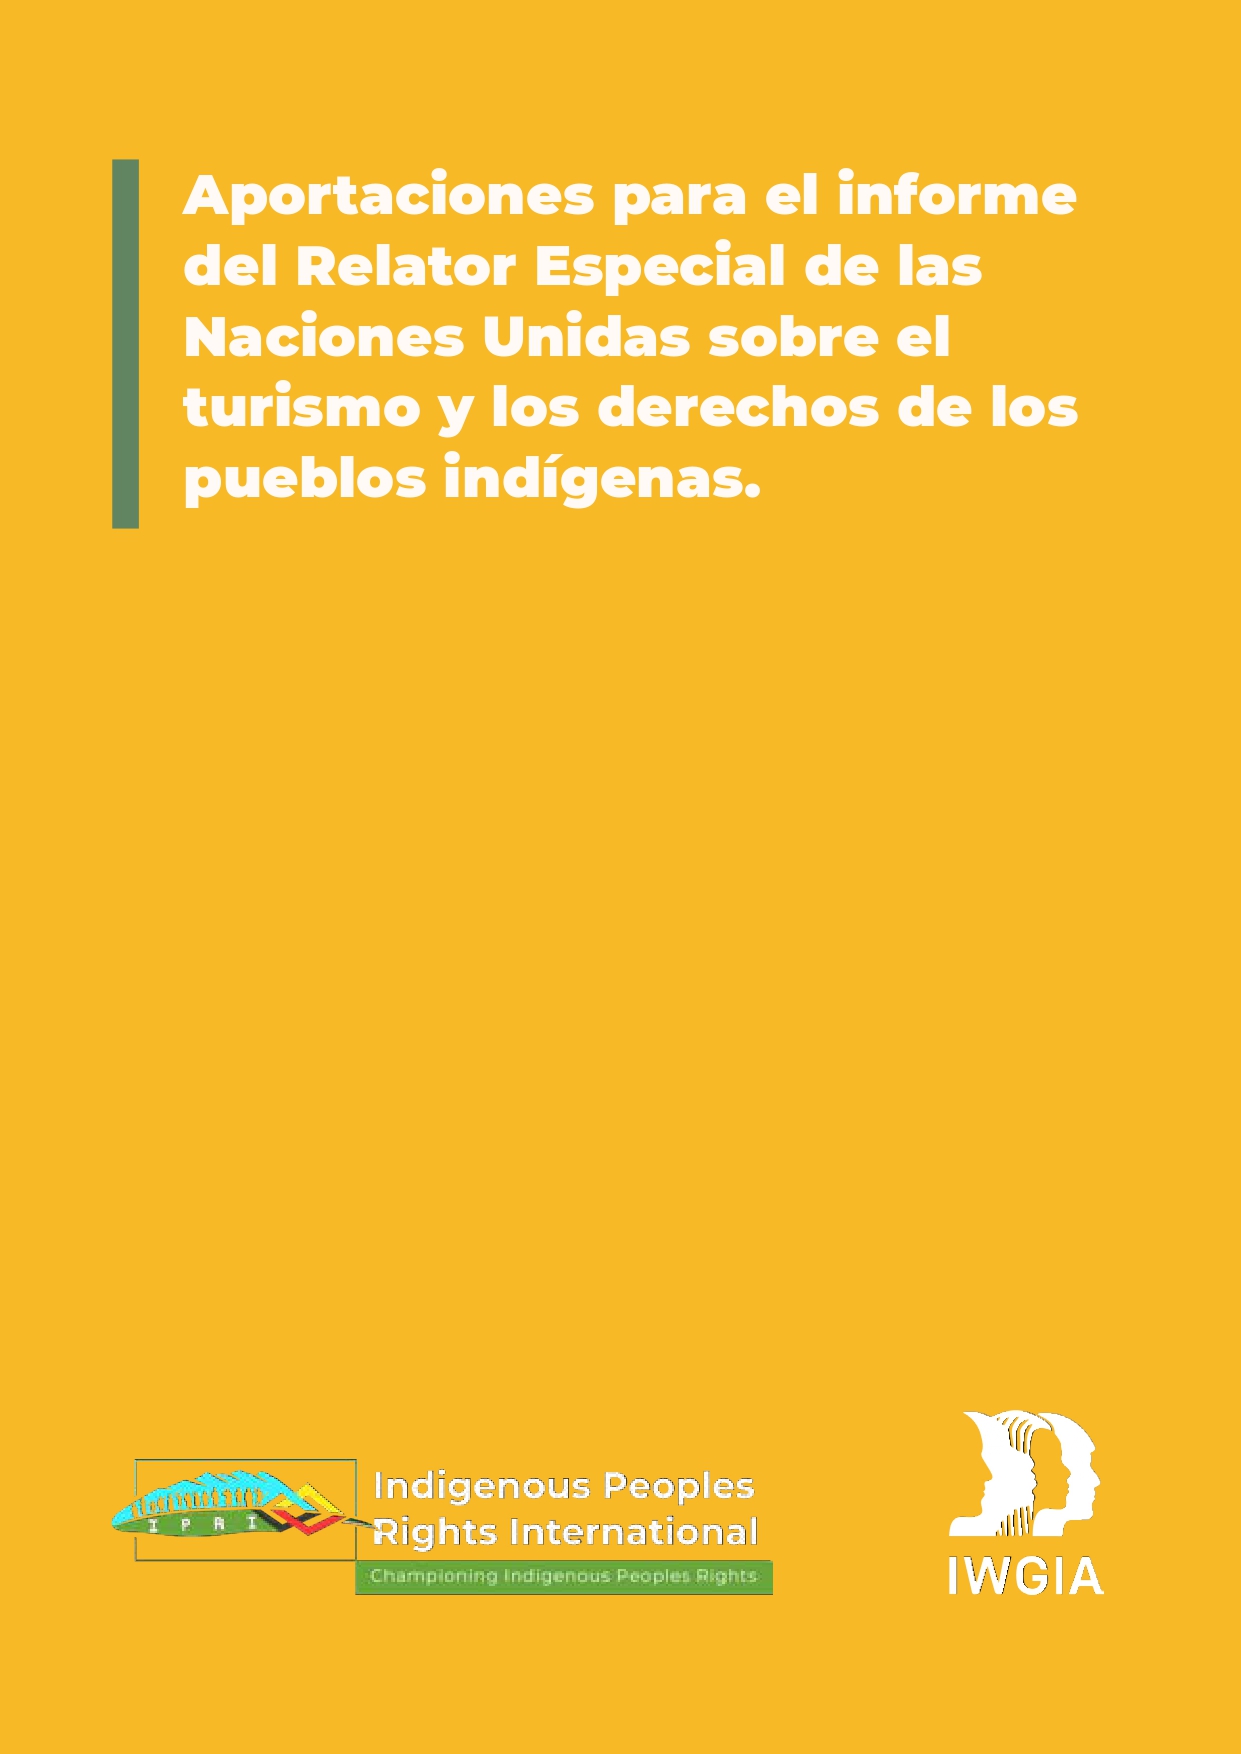 Aportaciones para el informe del Relator Especial de las Naciones Unidas sobre el turismo y los derechos de los pueblos indígenas